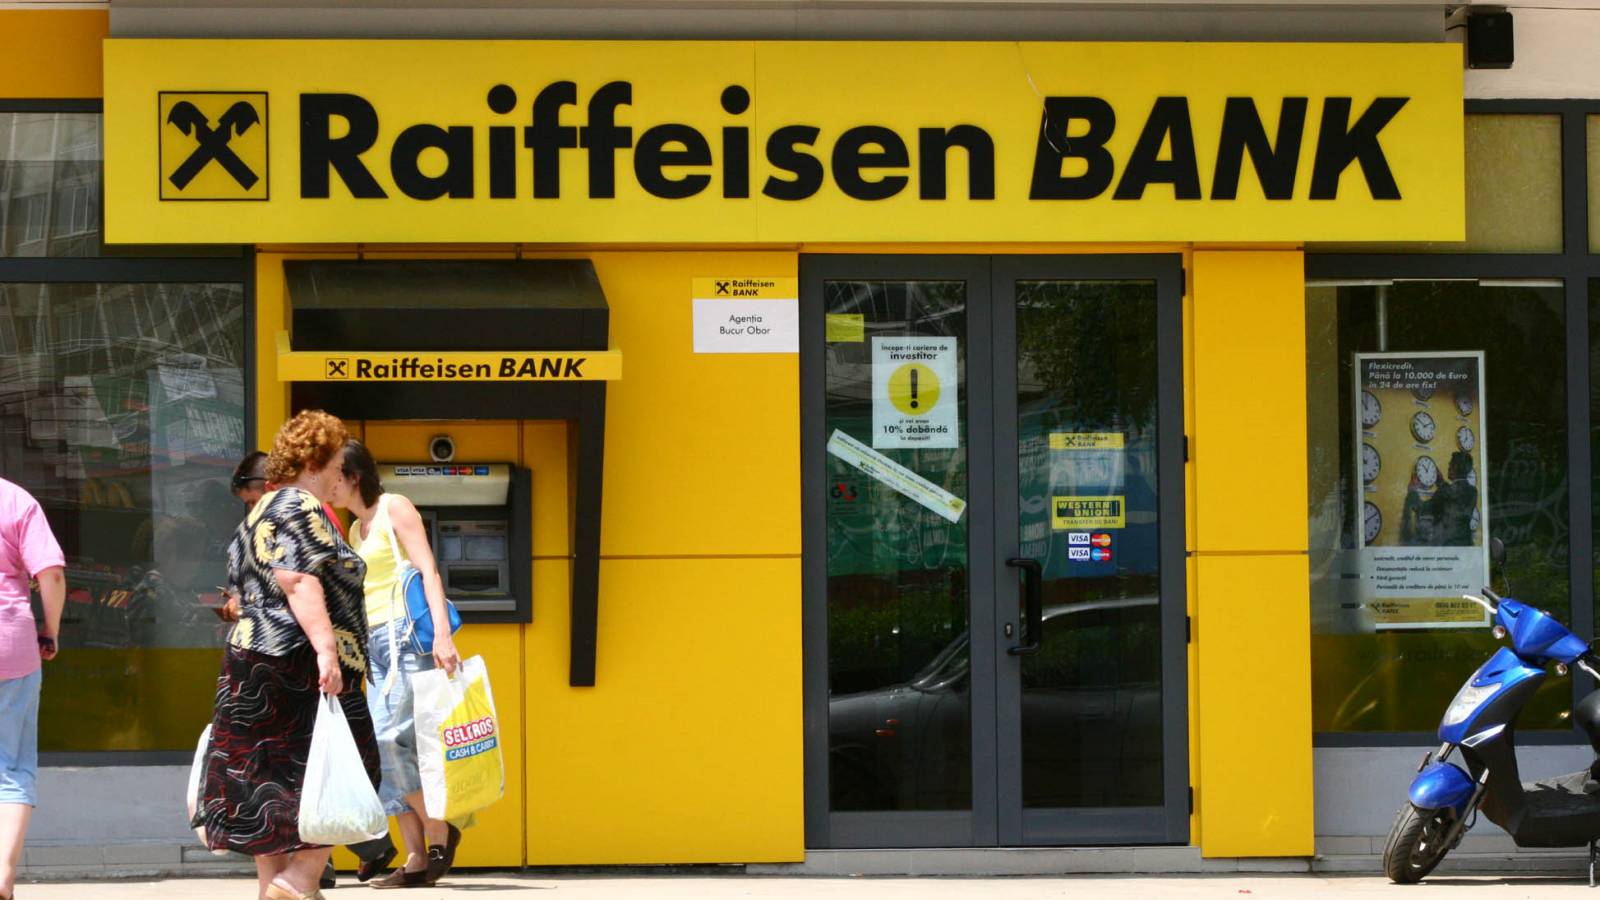 Raiffeisen Bank told